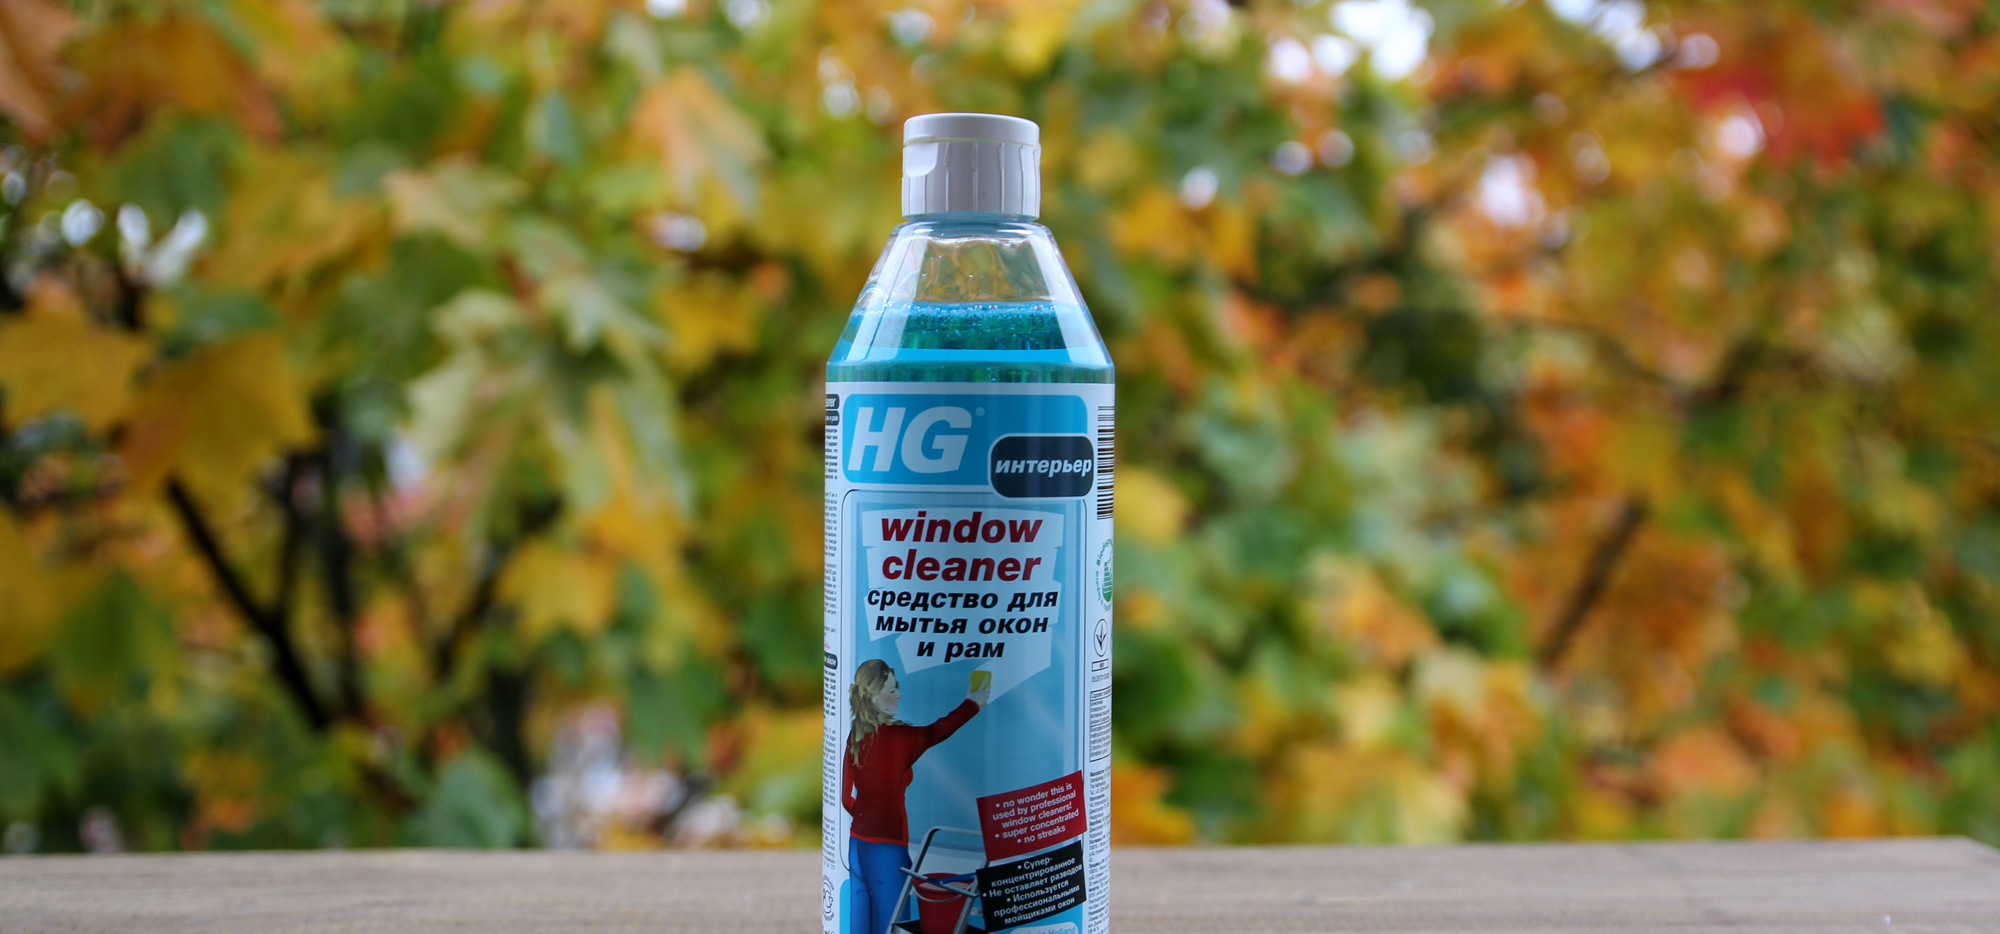 HG средство для мытья окон и рам